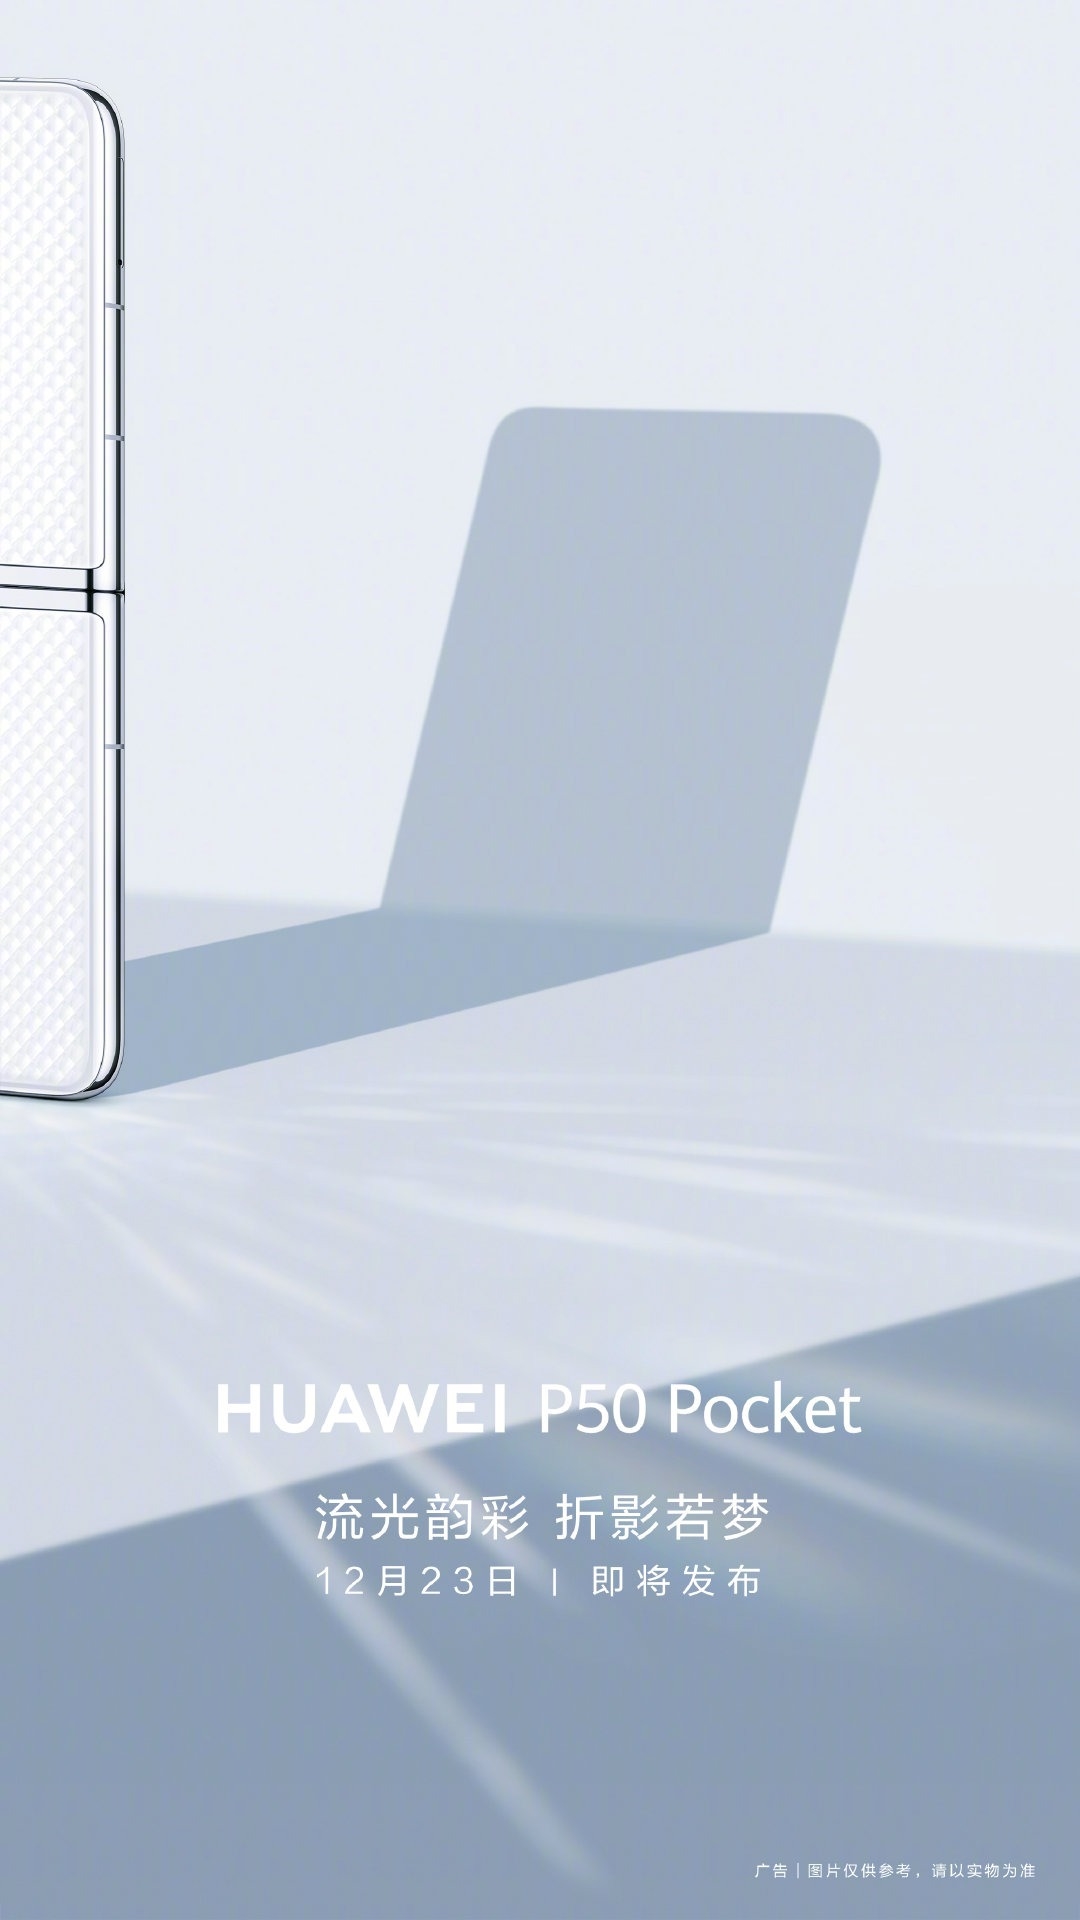 华为首款上下折叠手机P50 Pocket外观首曝 12月23日发布